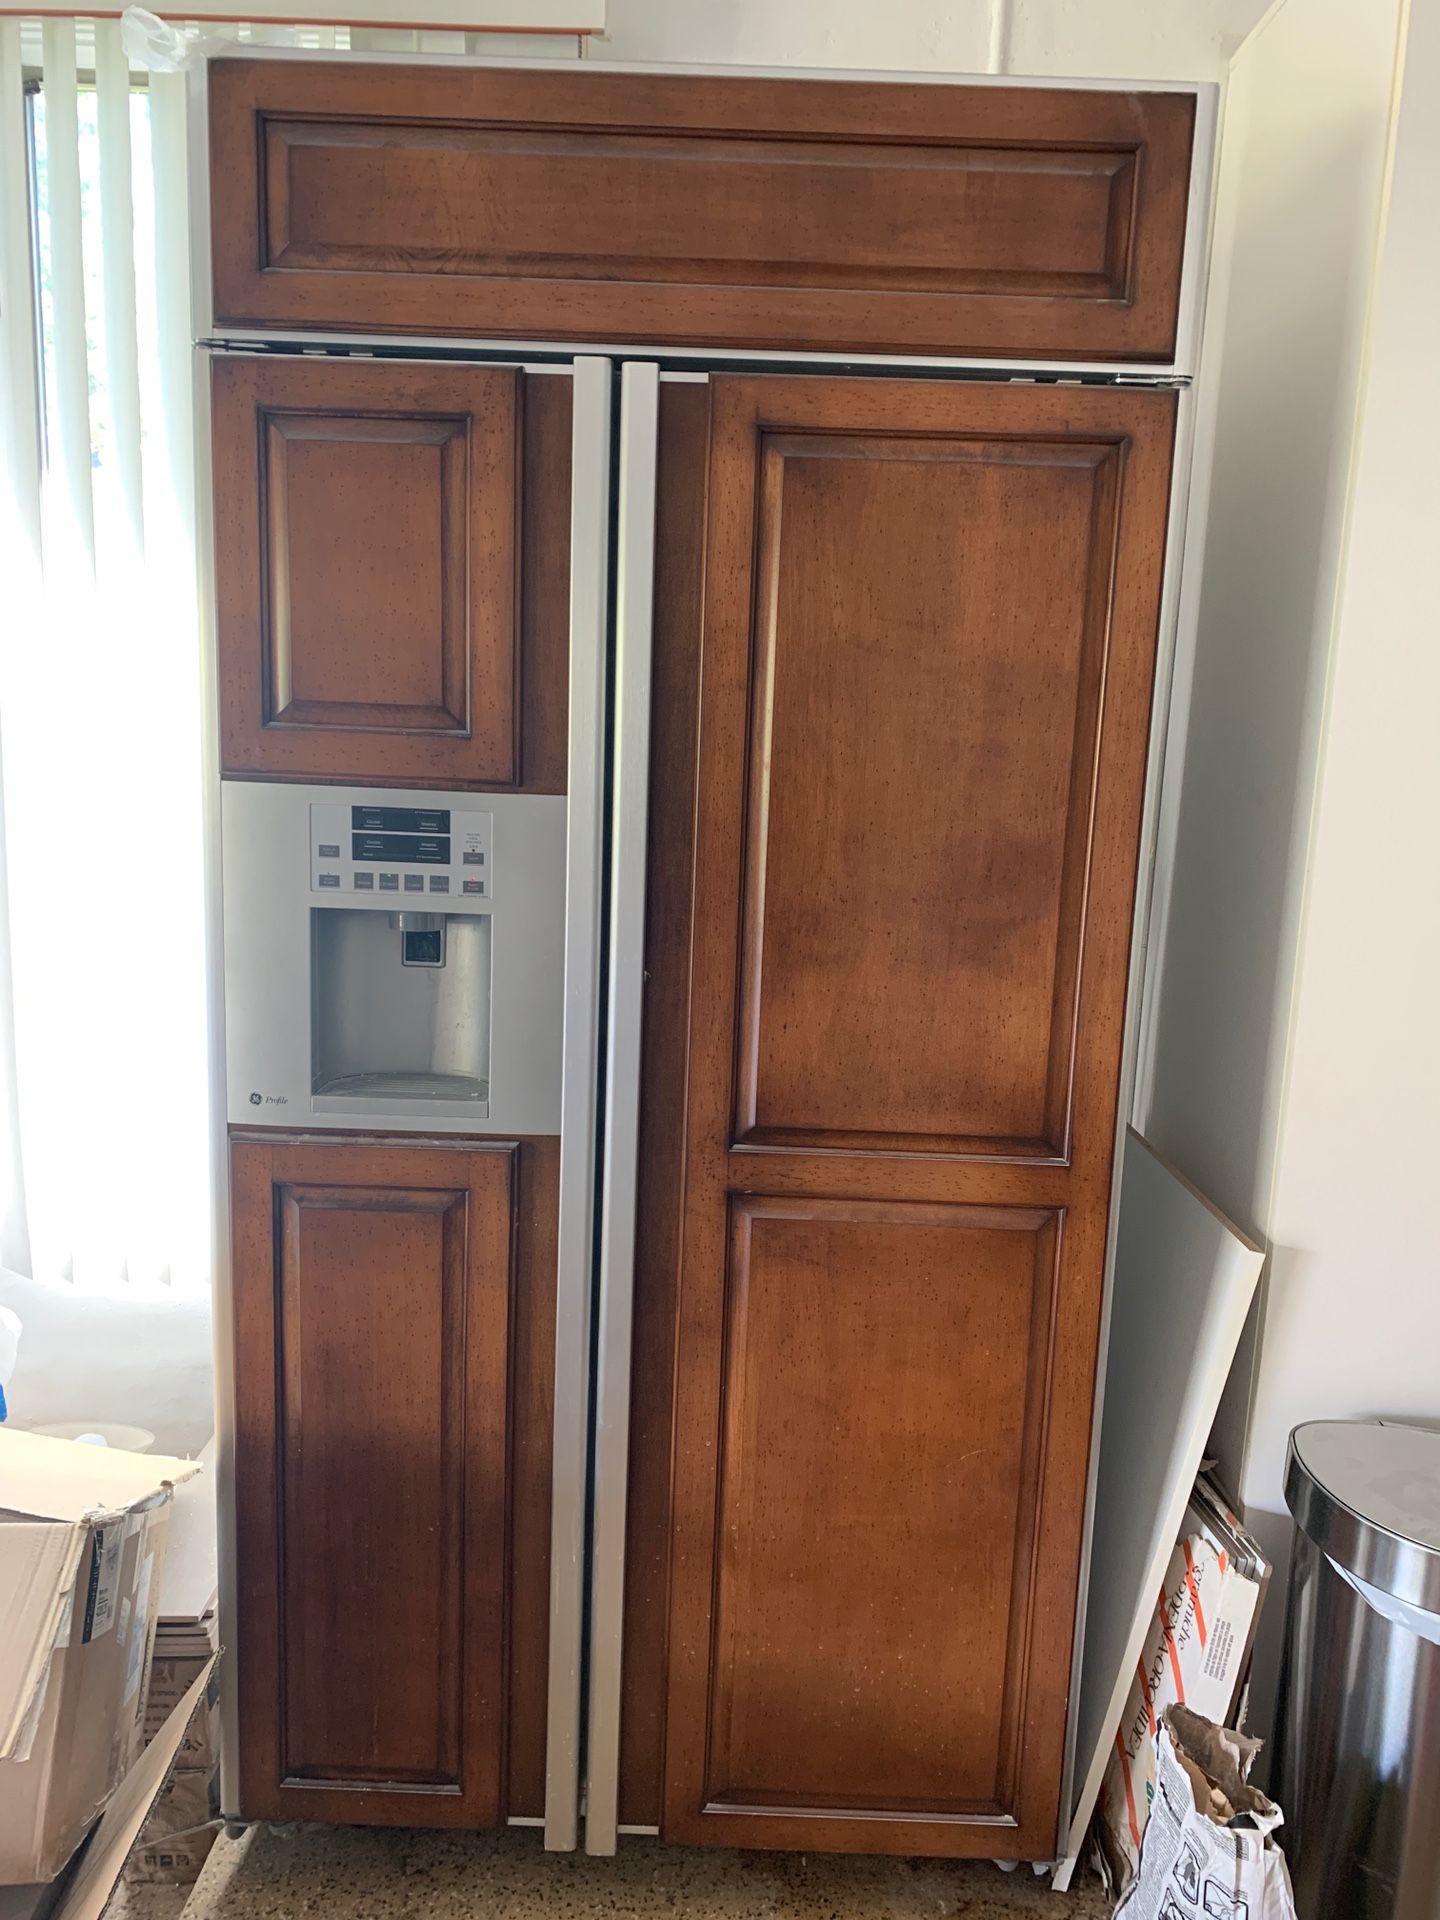 Refrigerator two doors